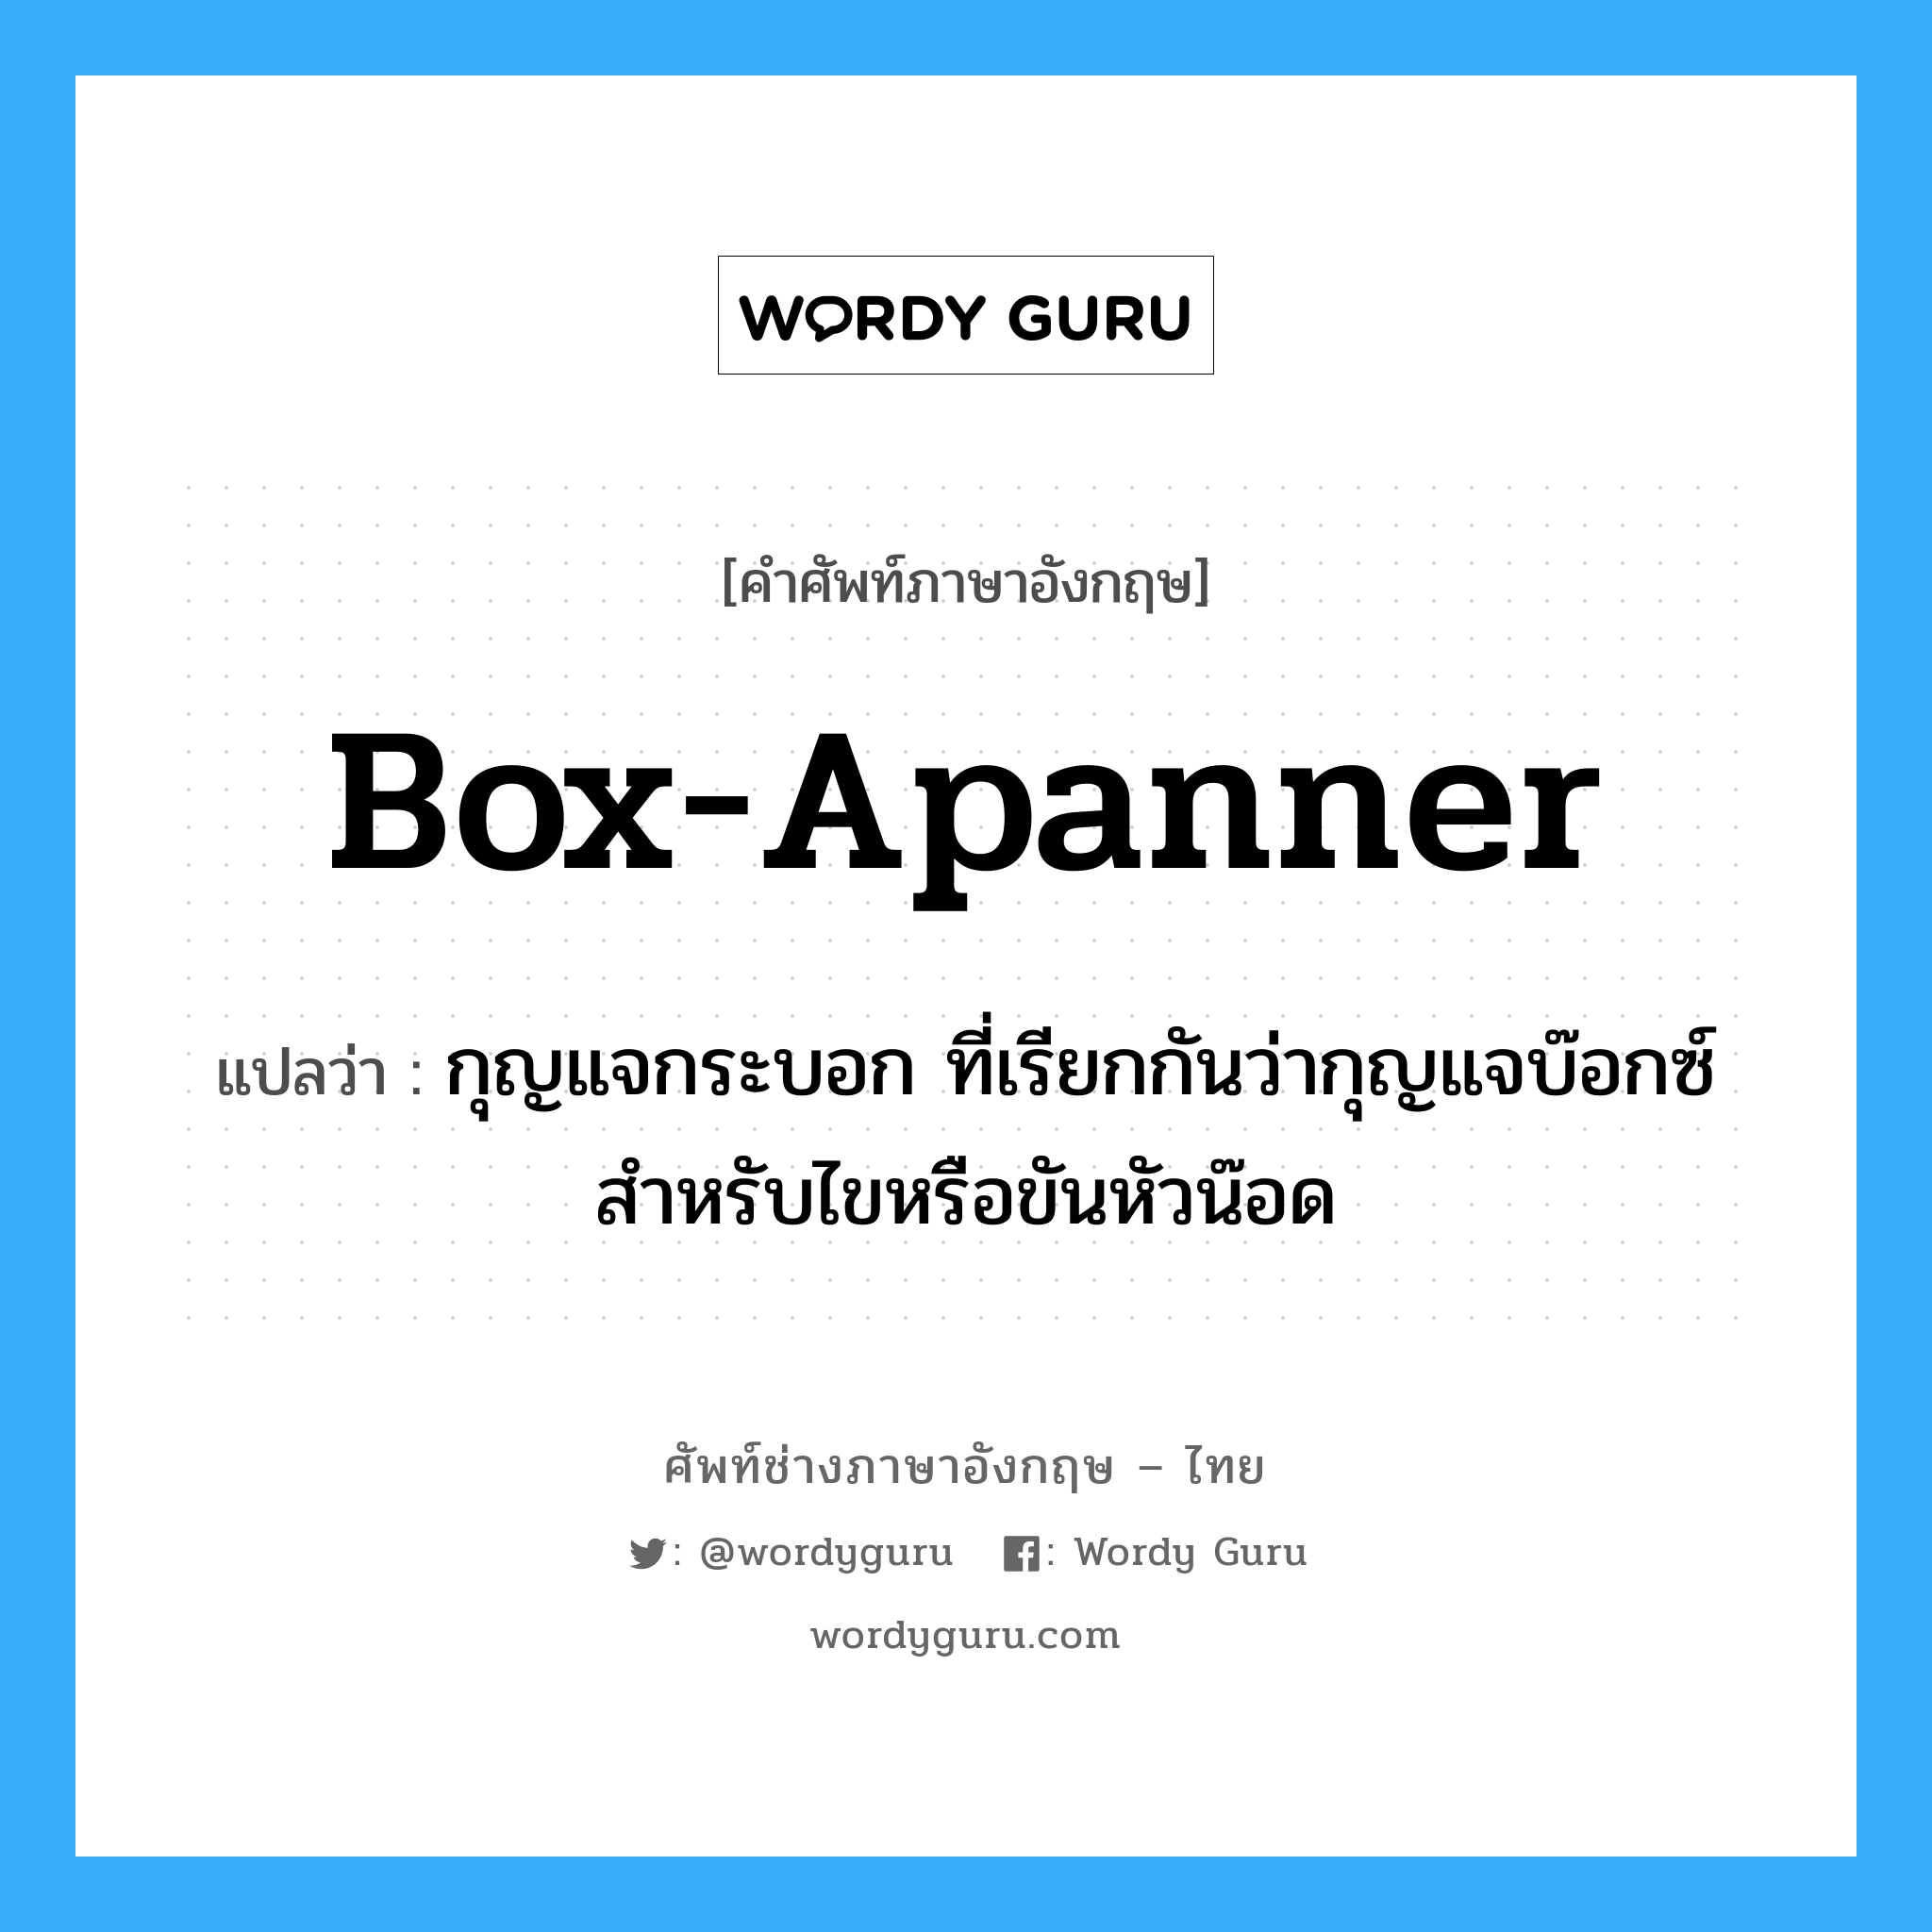 box-apanner แปลว่า?, คำศัพท์ช่างภาษาอังกฤษ - ไทย box-apanner คำศัพท์ภาษาอังกฤษ box-apanner แปลว่า กุญแจกระบอก ที่เรียกกันว่ากุญแจบ๊อกซ์ สำหรับไขหรือขันหัวน๊อด